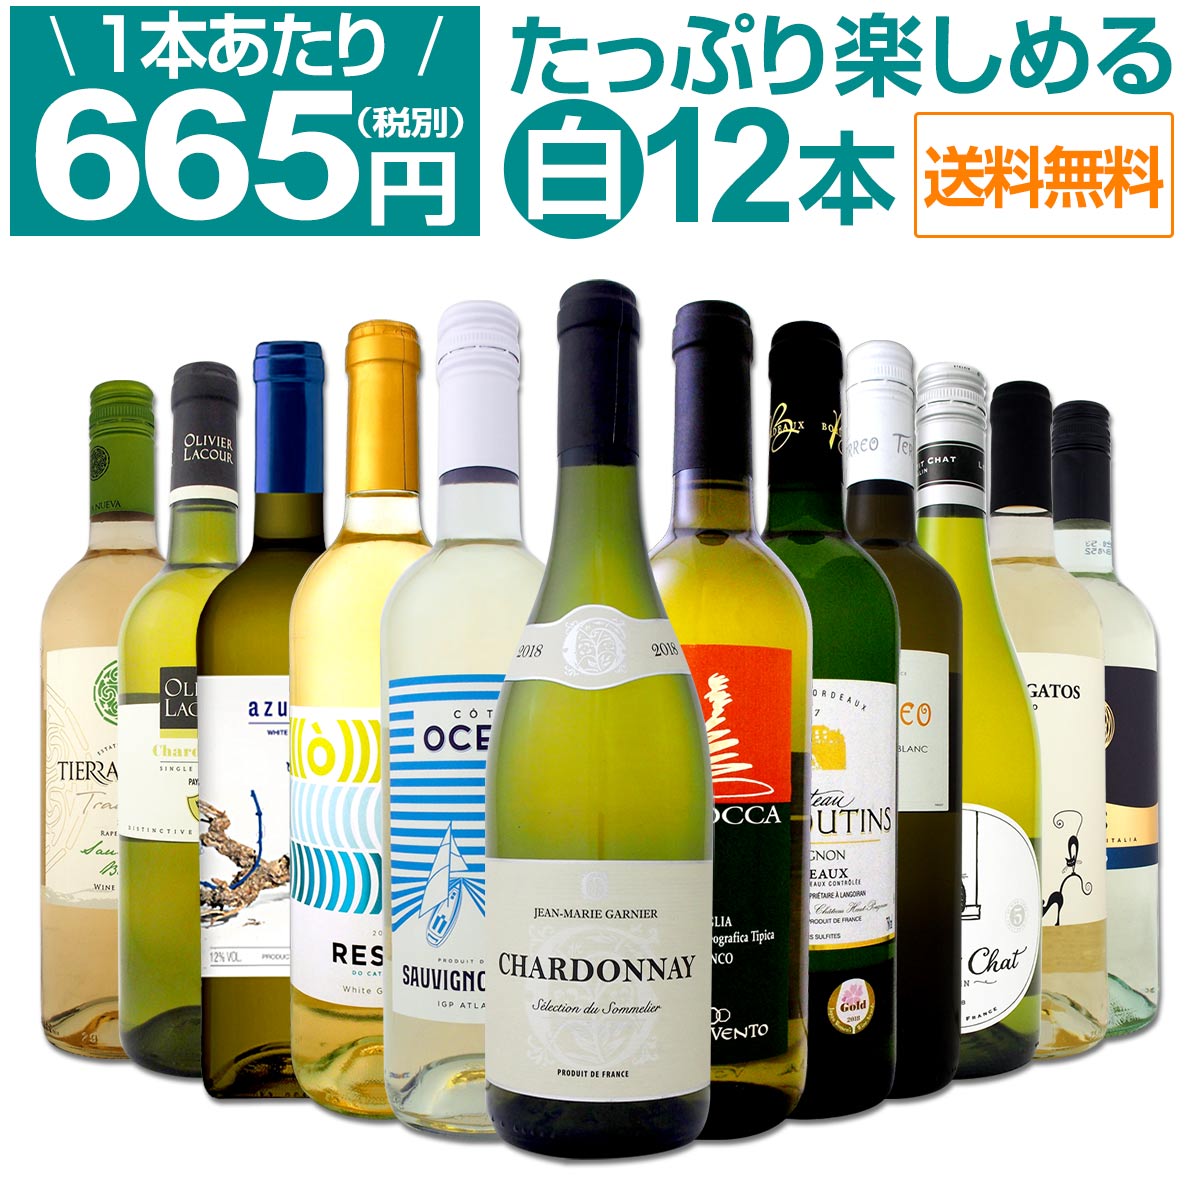 【送料無料】1本あたり665円(税別)!!採算度外視の大感謝!厳選白ワイン12本セット